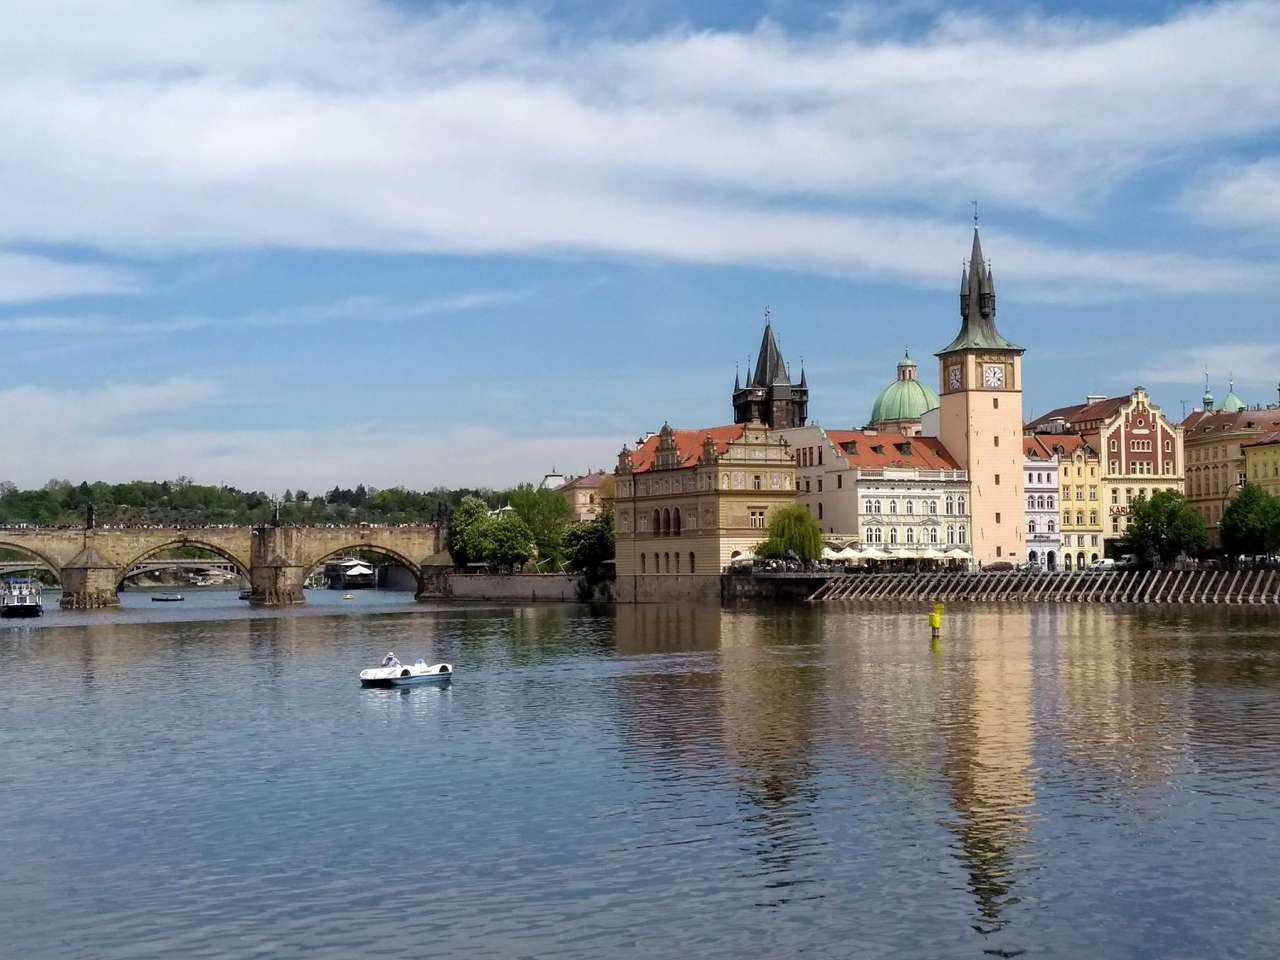 Cityscape van Praag Tsjechië legpuzzel online